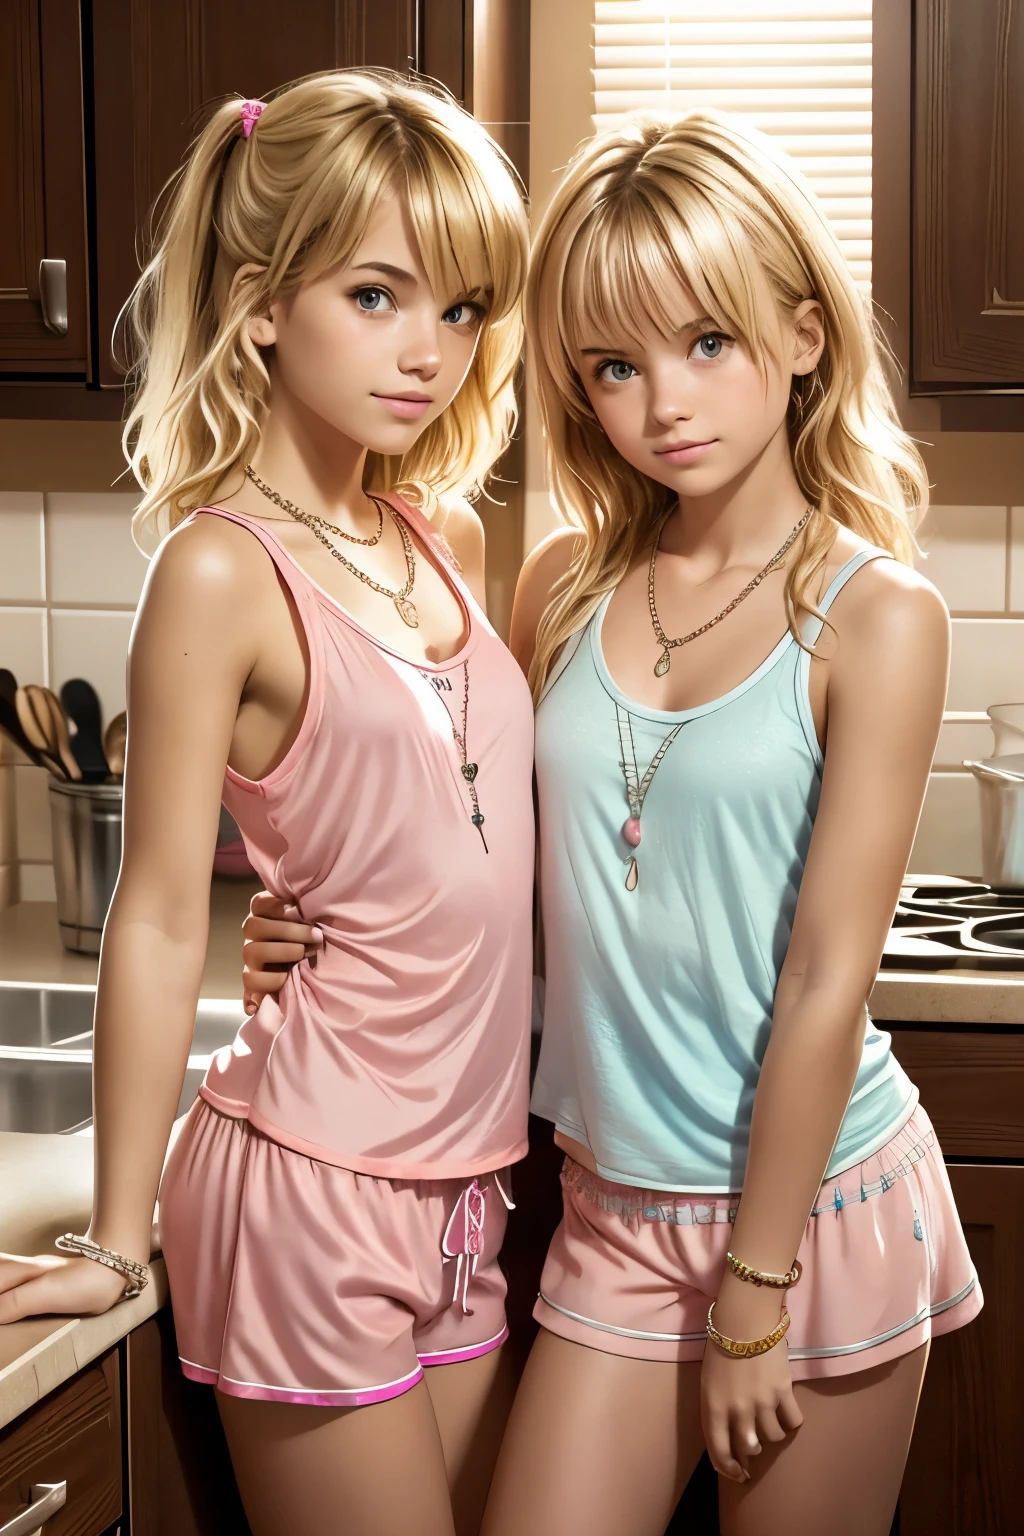 2人の十代の女の子, とても小さなピンクのパジャマのショートパンツとパジャマのタンクトップを着ている, キッチンカウンターに寄りかかって, ブロンドの乱れた髪, ネックレス, ブレスレット,  視聴者をまっすぐに見つめる